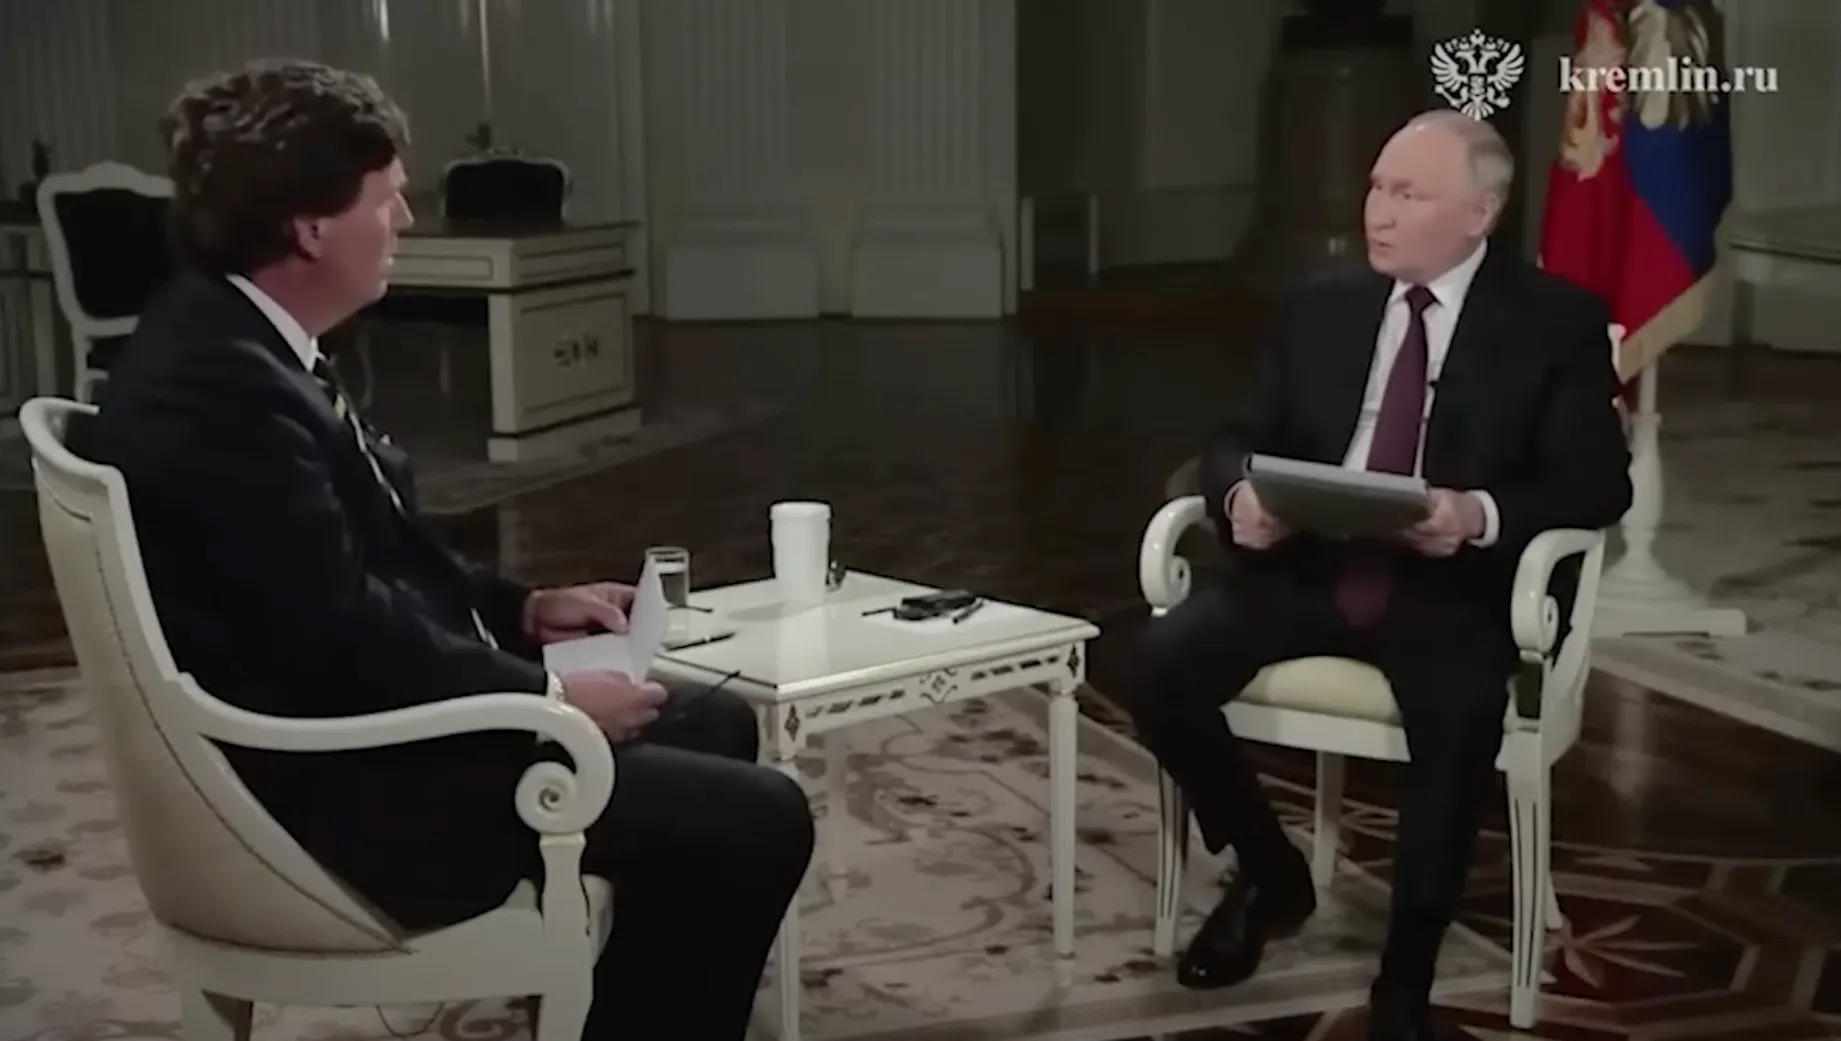 Путин и Карлсон во время интервью